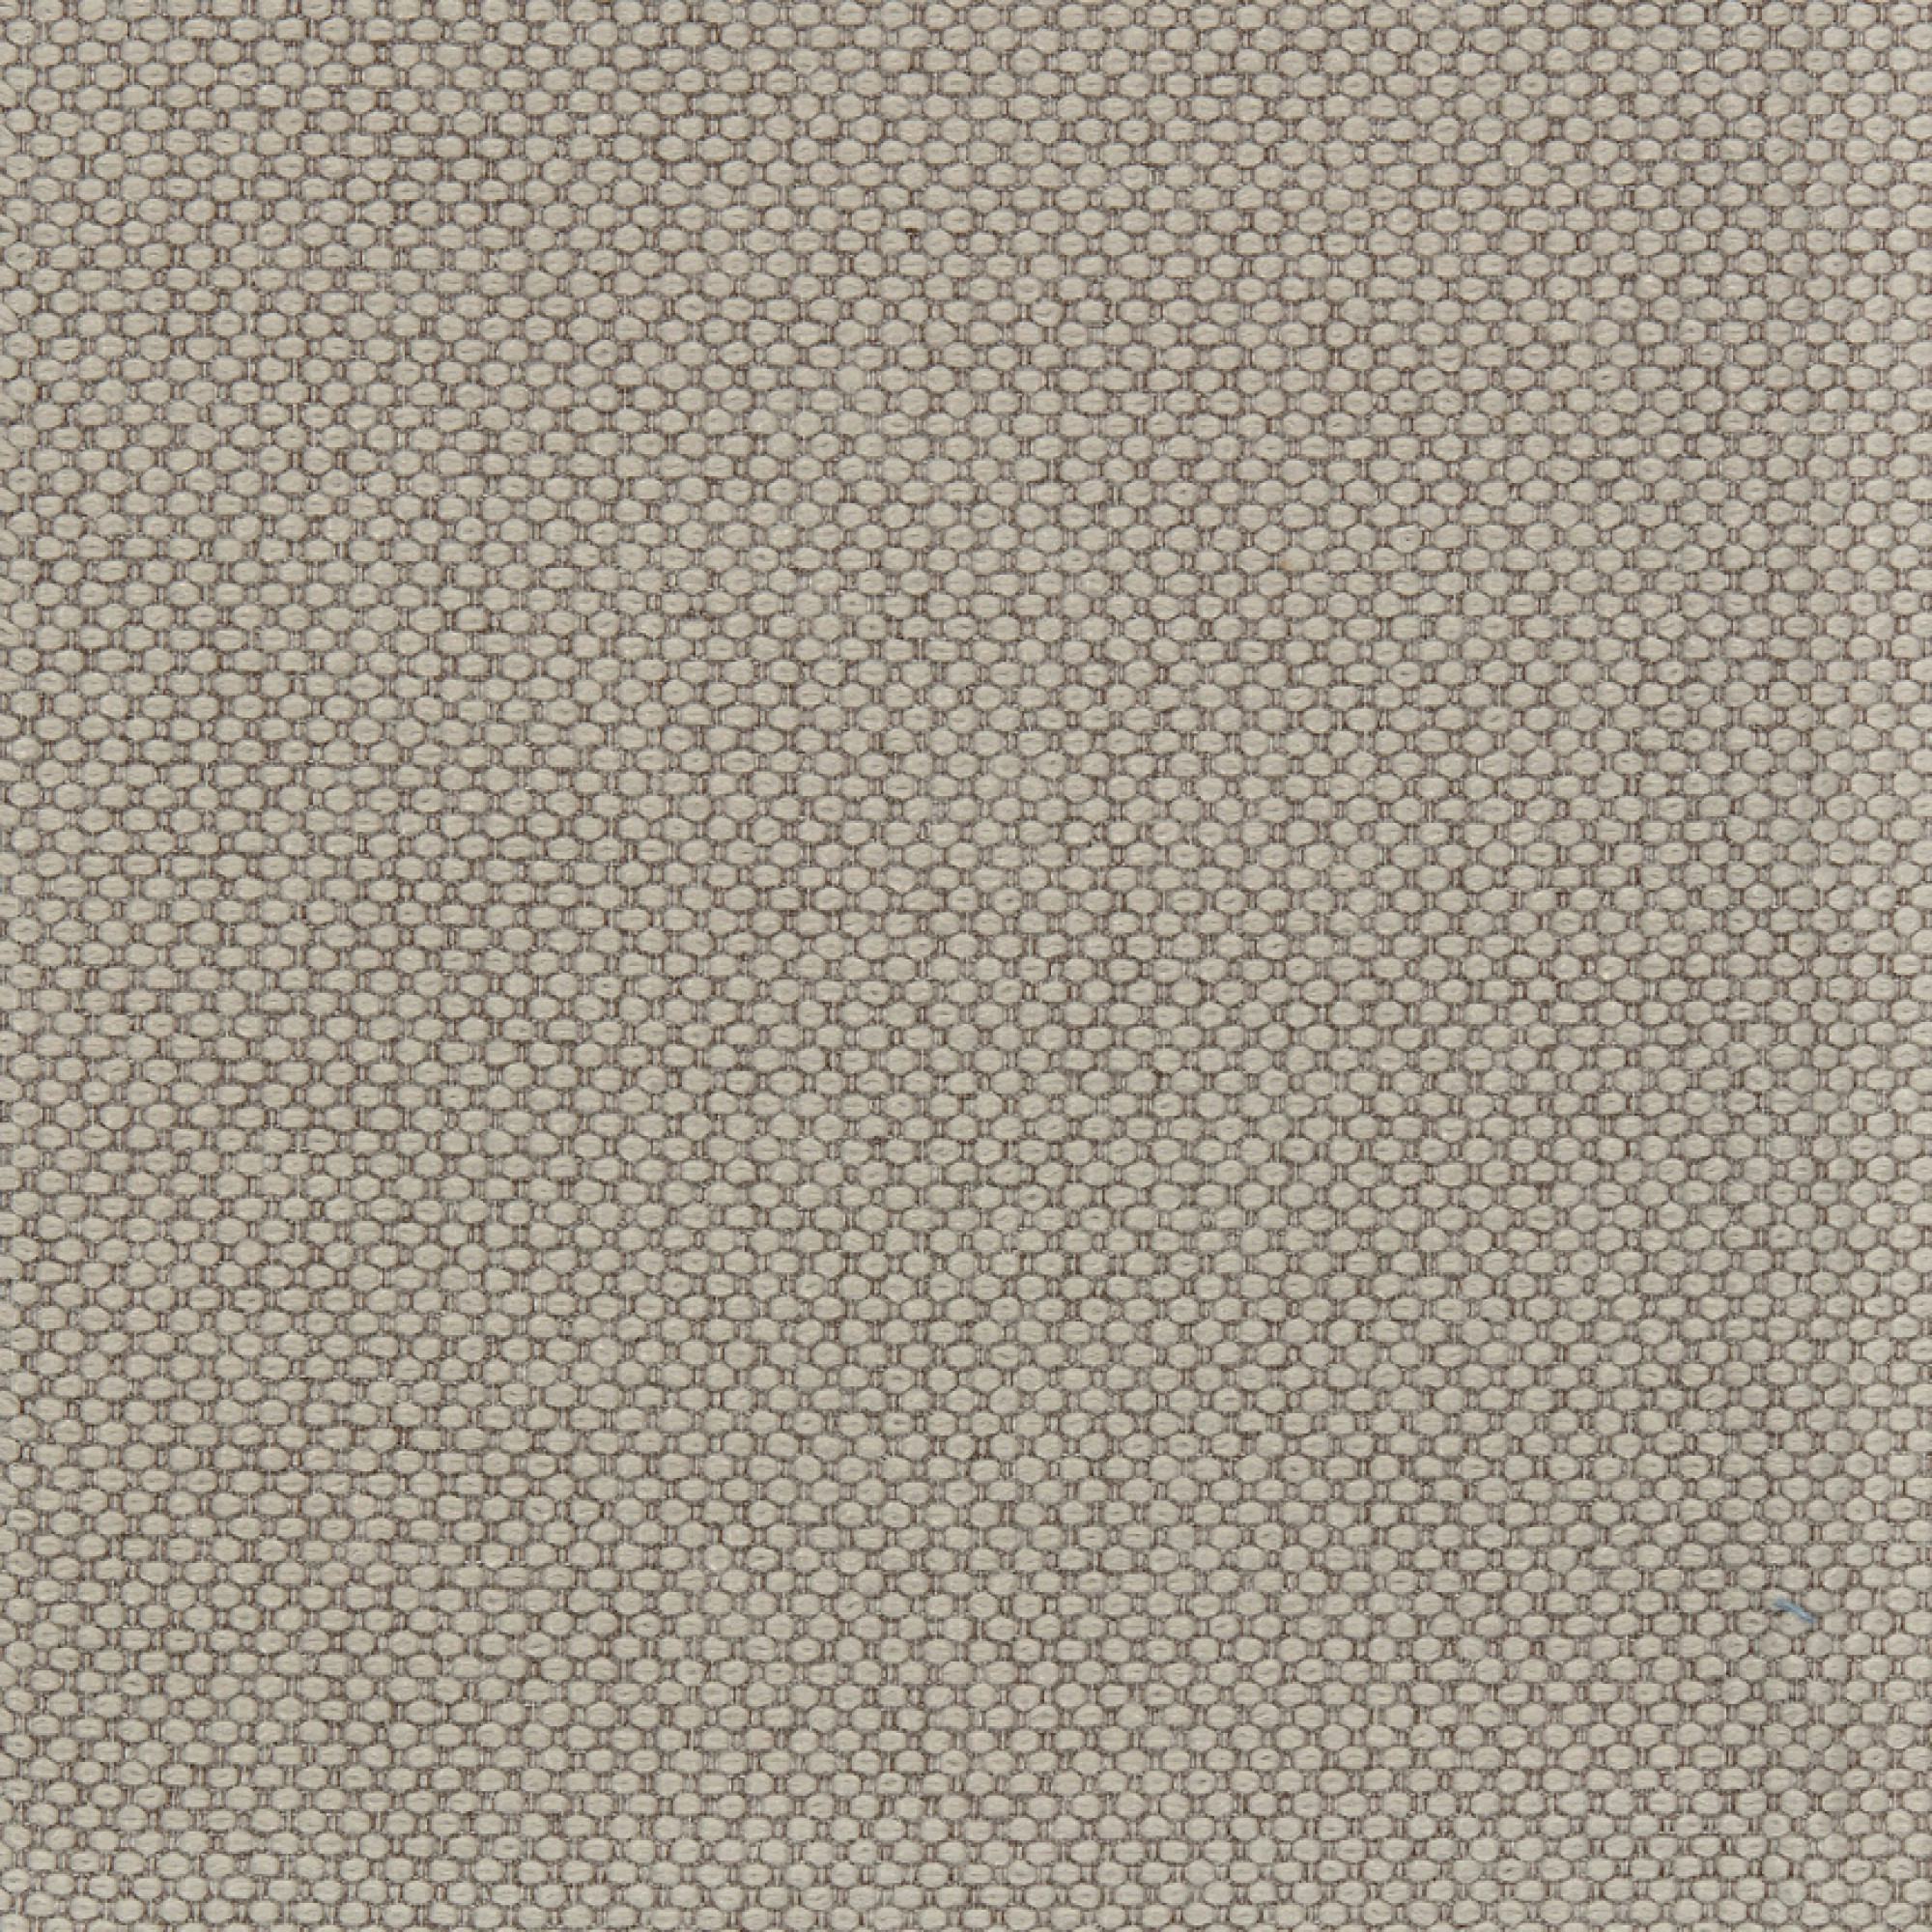 Fabric sample Merit 0028 brown